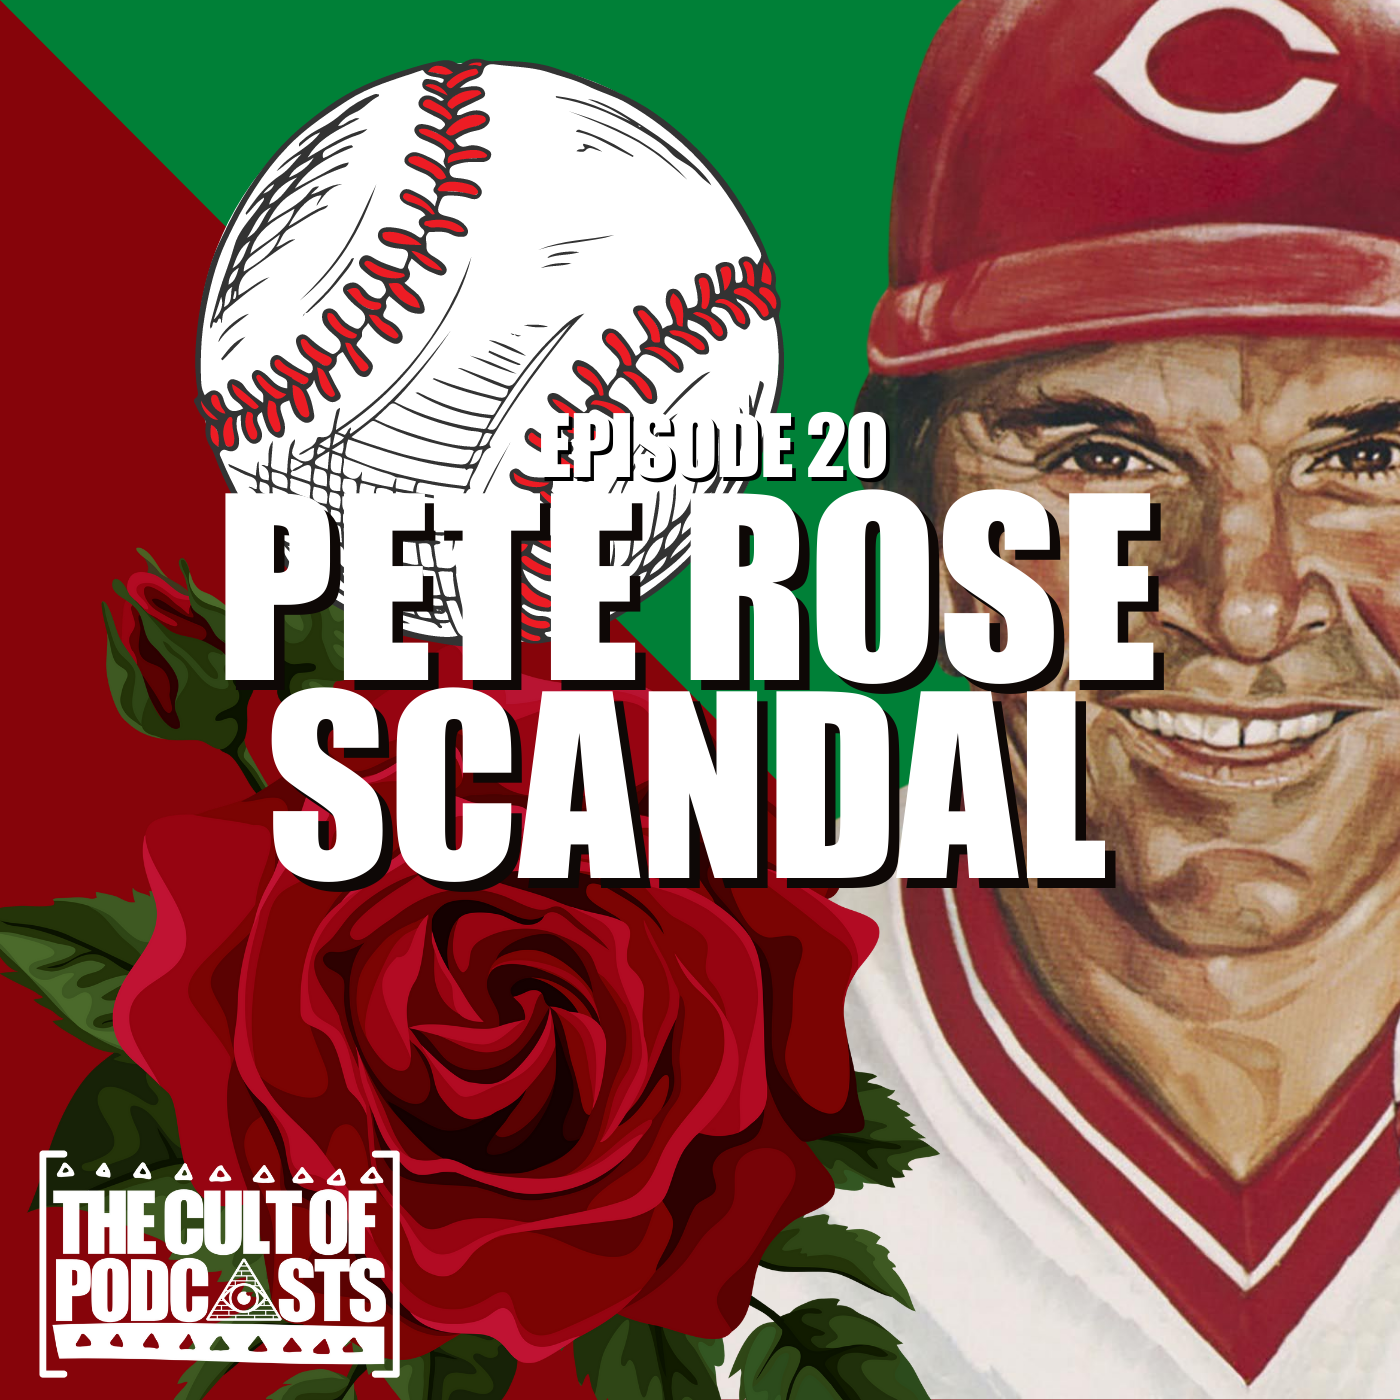 Pete Rose Scandal